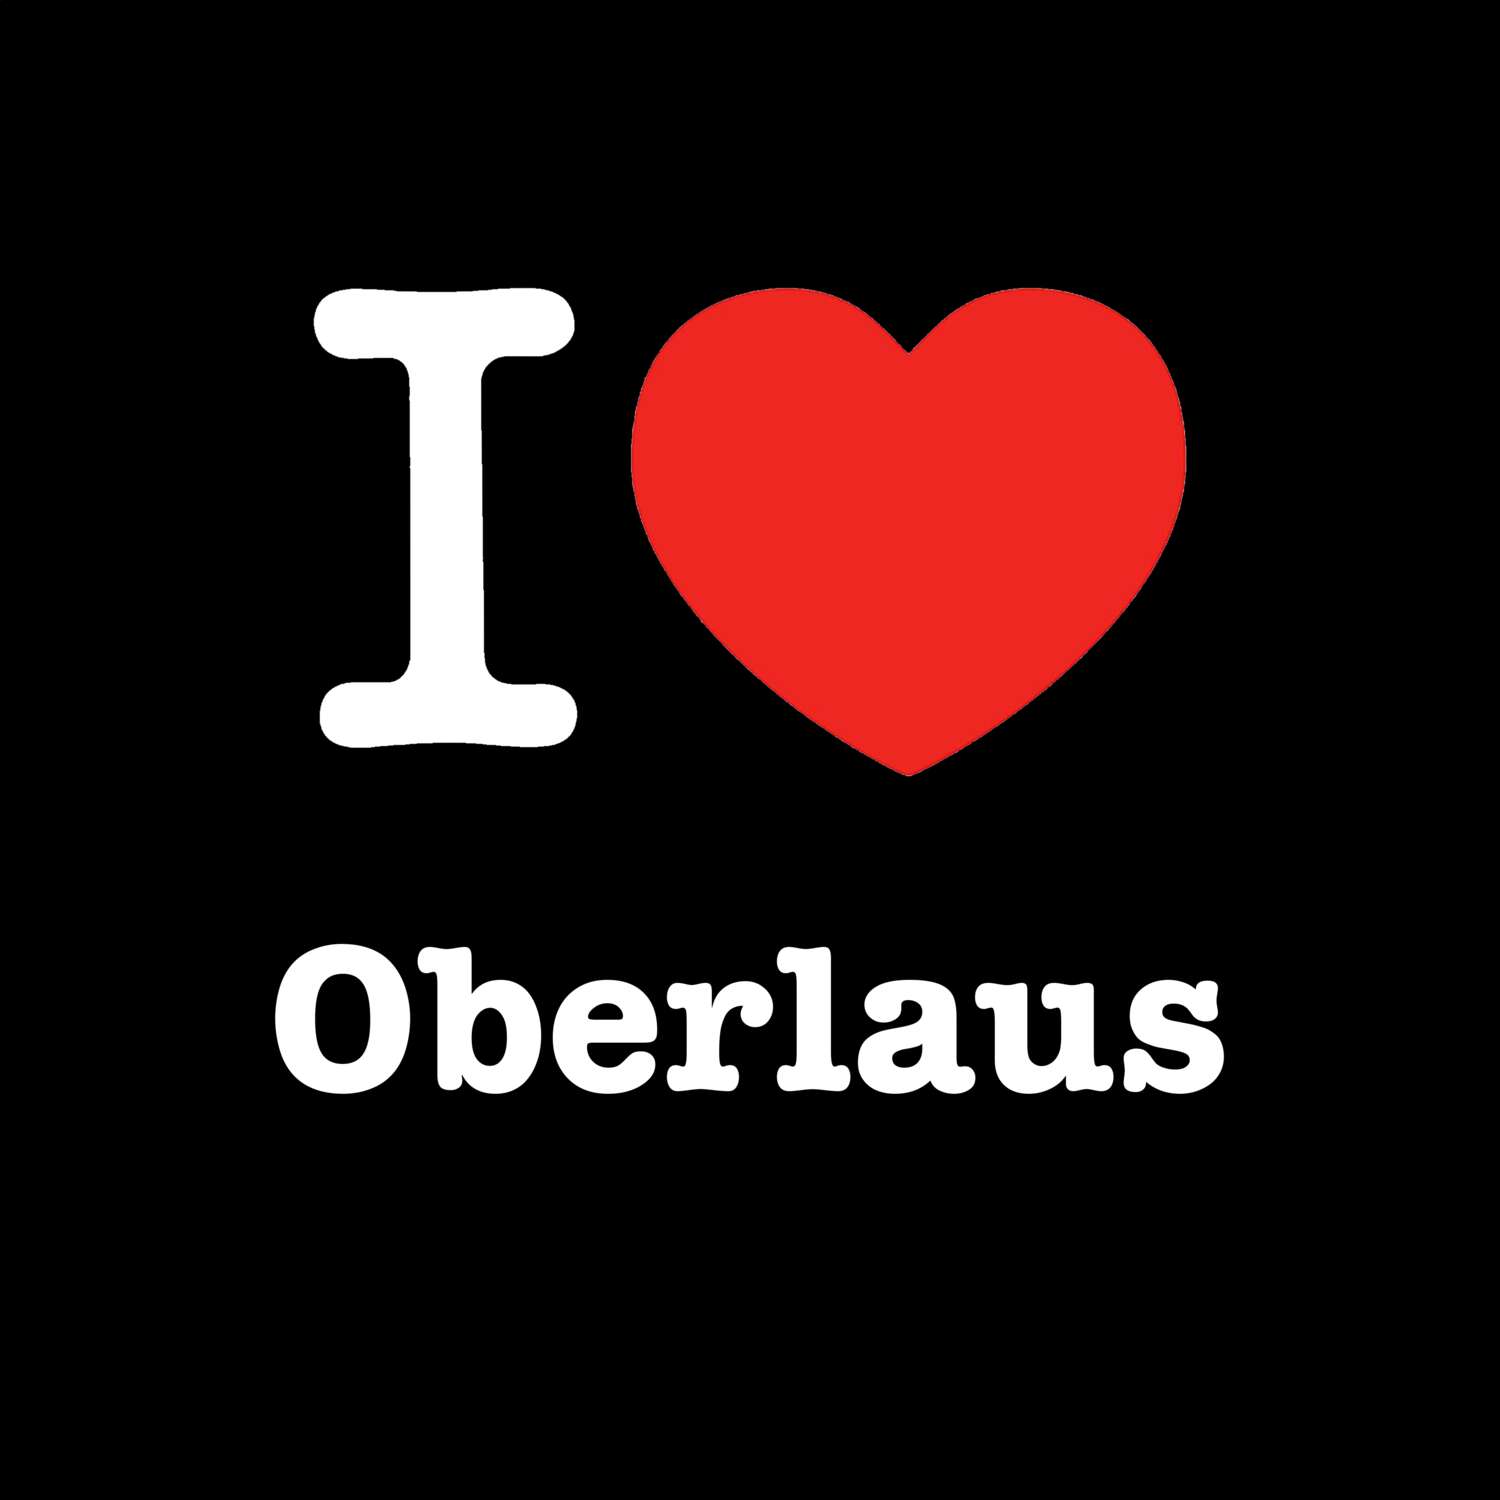 Oberlaus T-Shirt »I love«